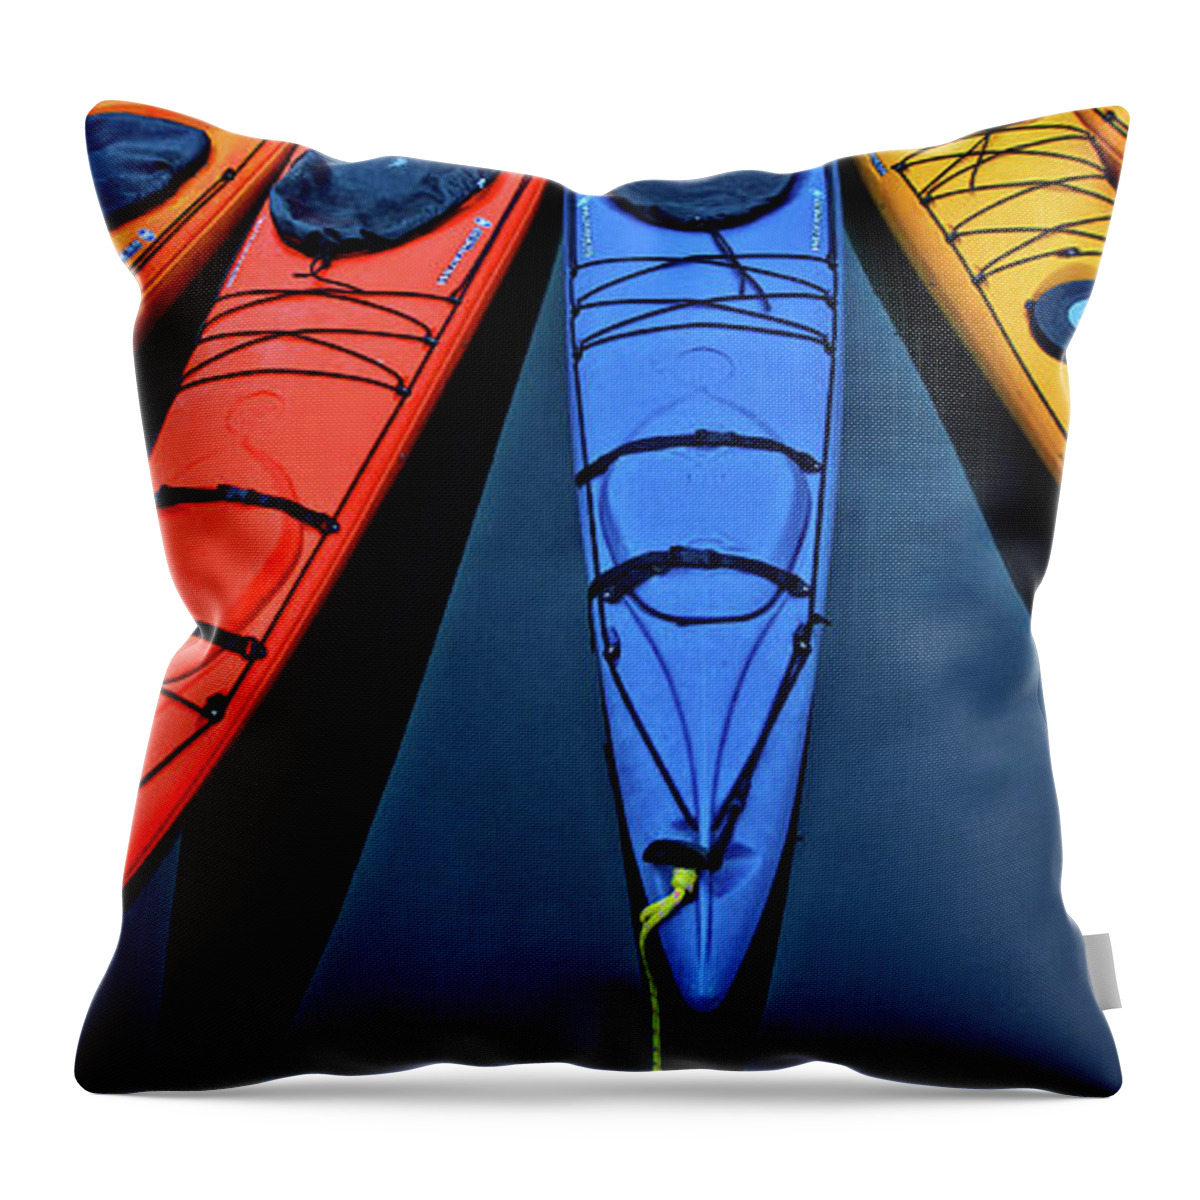 Kayak Throw Pillow featuring the photograph Kayak Colors by Ed Broberg